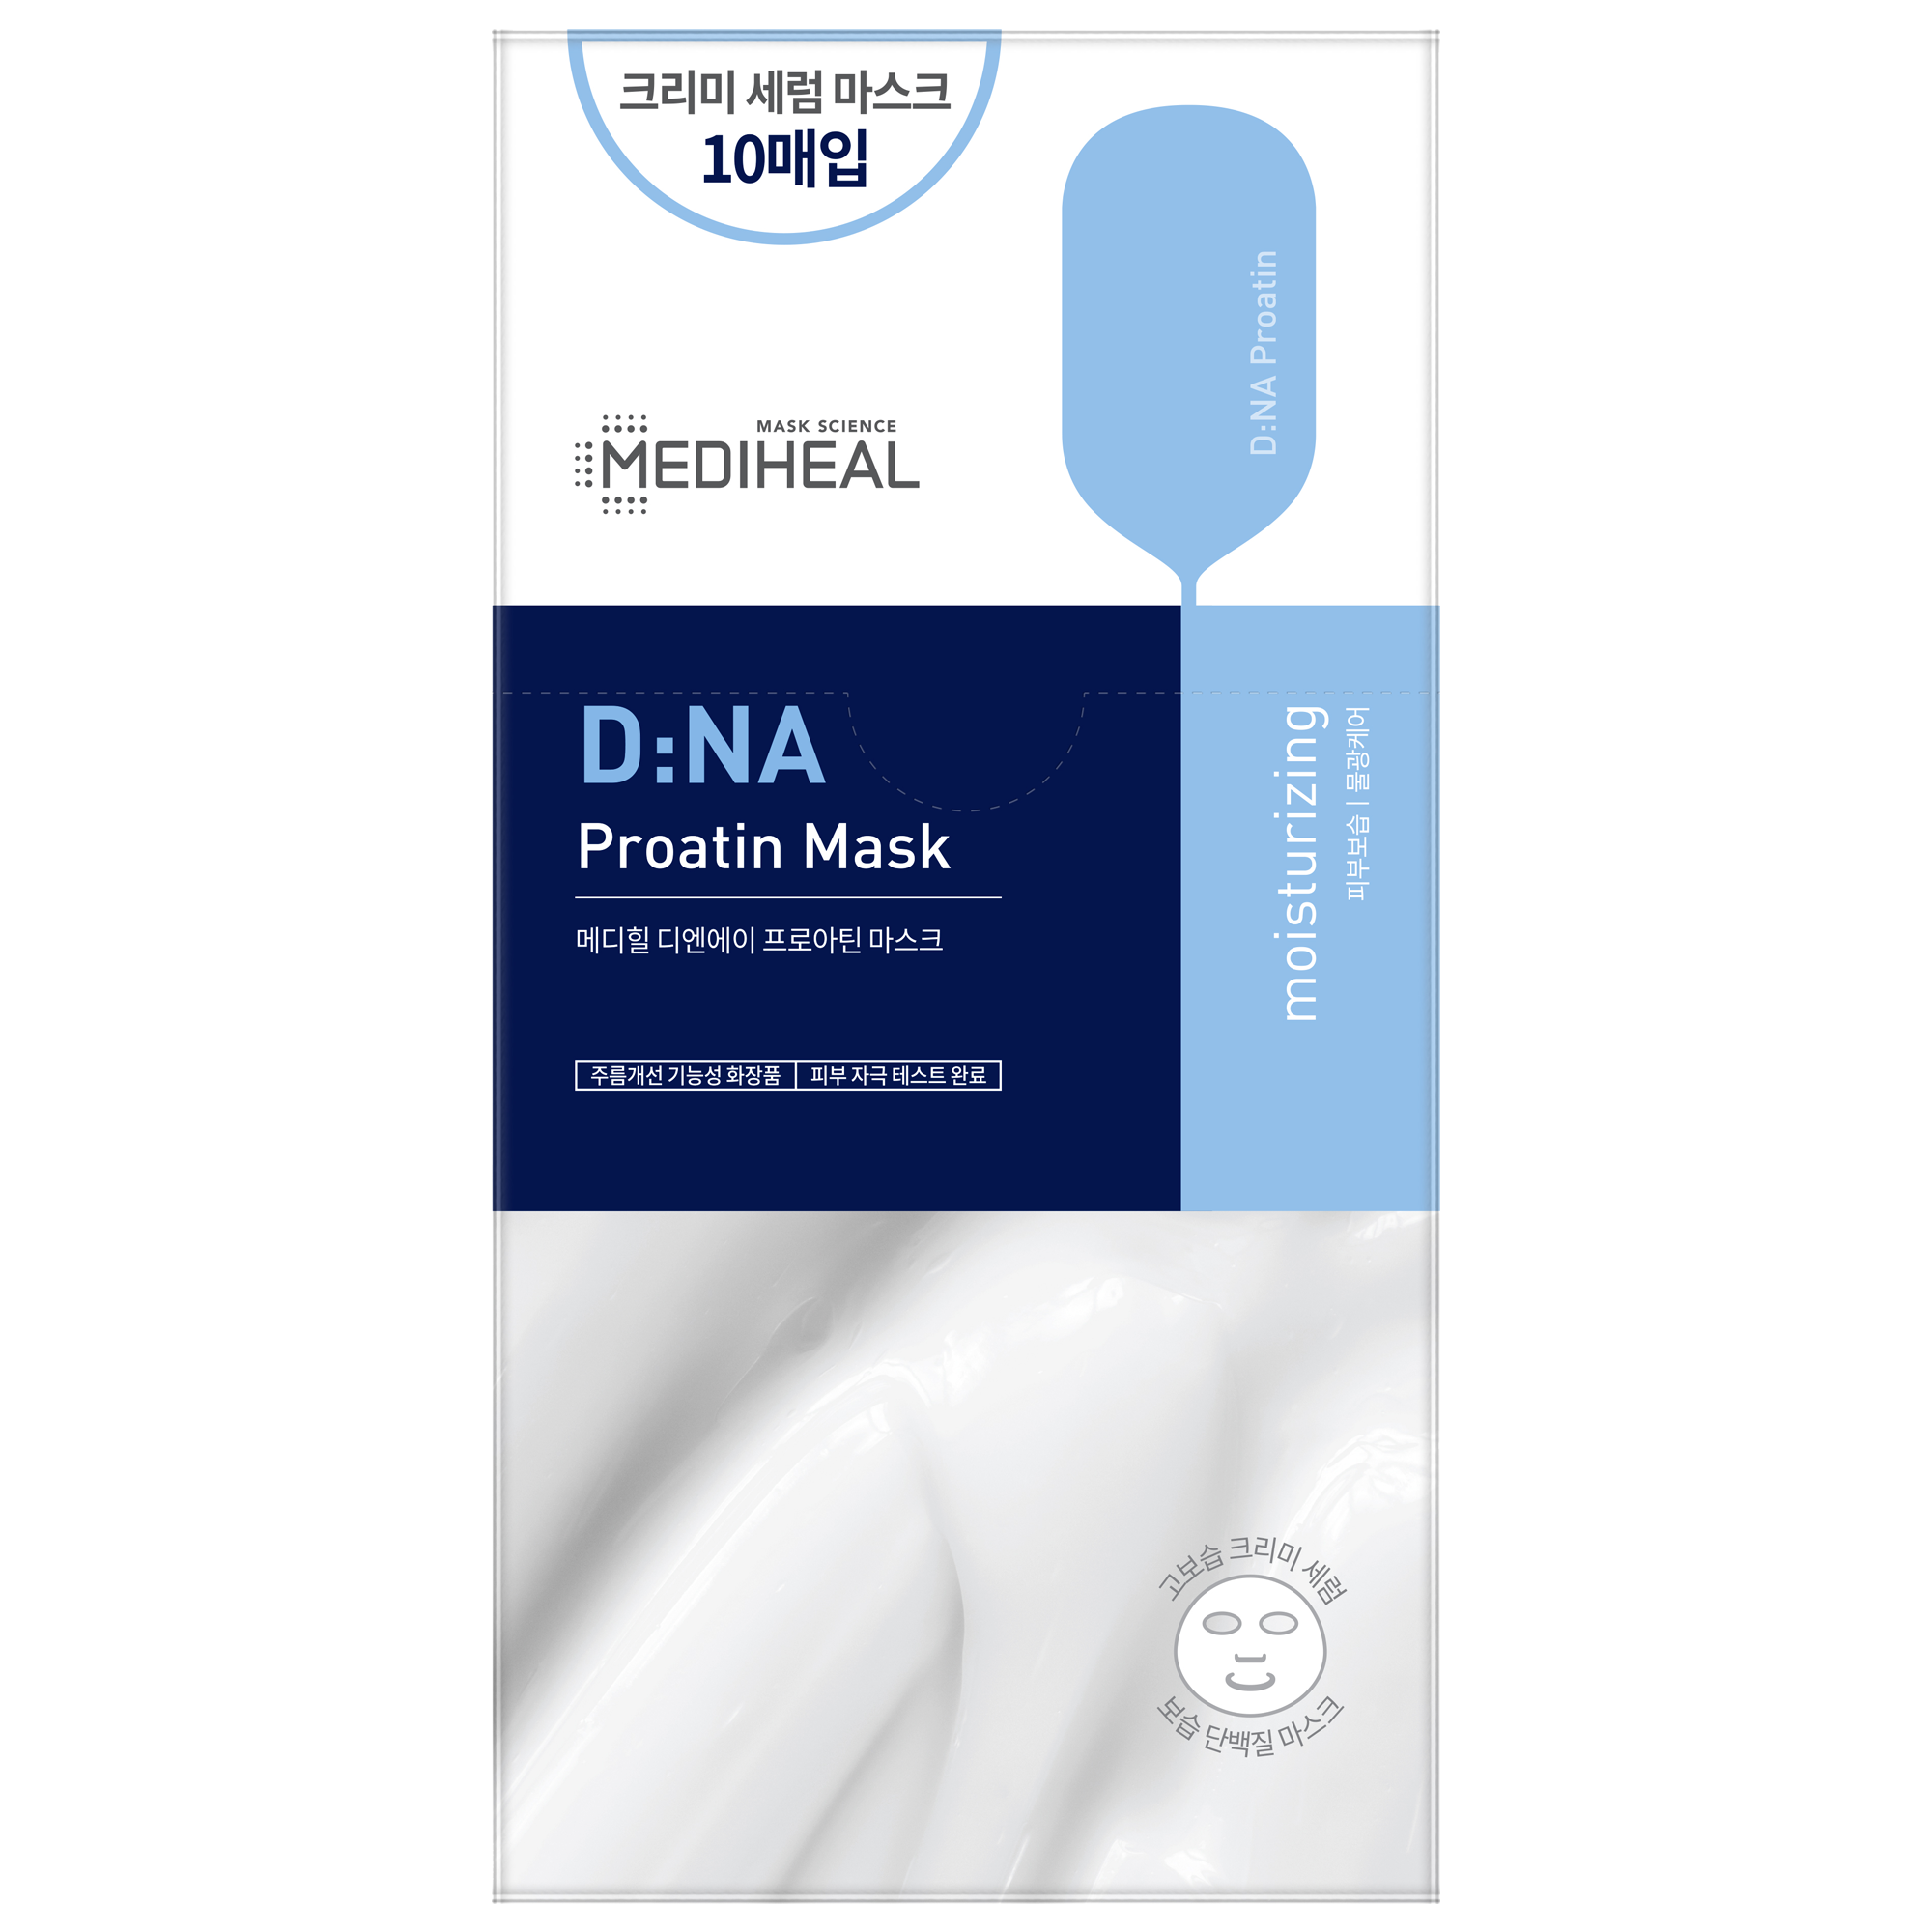 D:Na Proatin Mask - [brand_name]